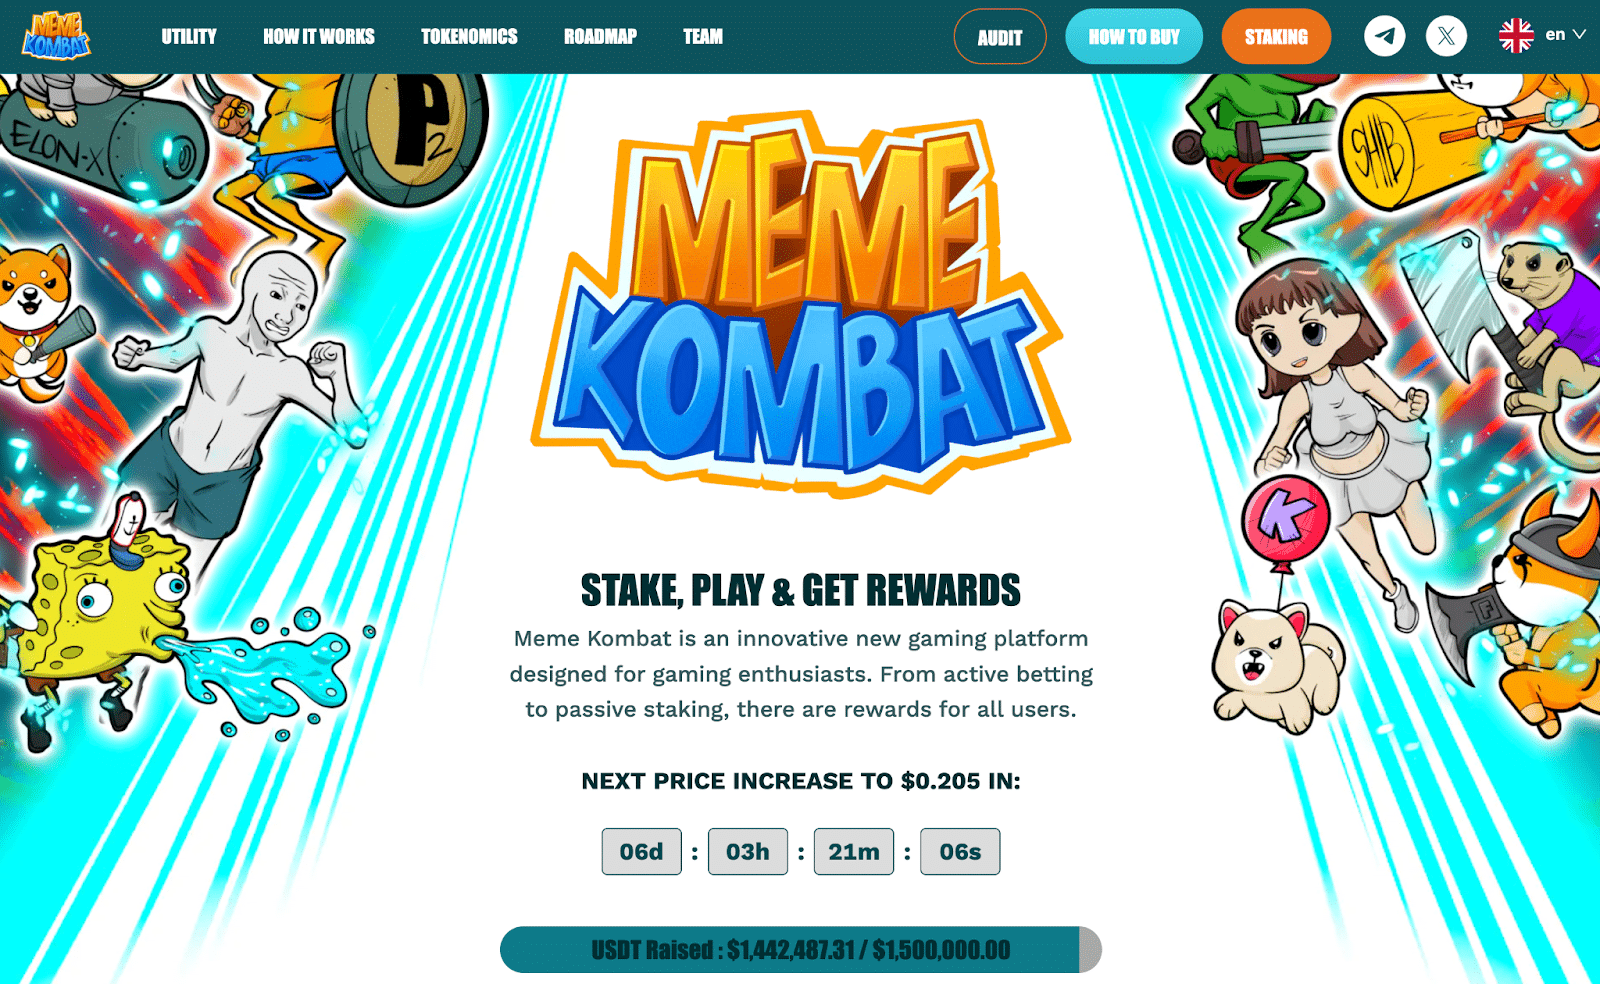 Pepe币价格上涨25%　Meme Kombat为独特游戏平台筹集近150万美元　或将迎来100倍增长